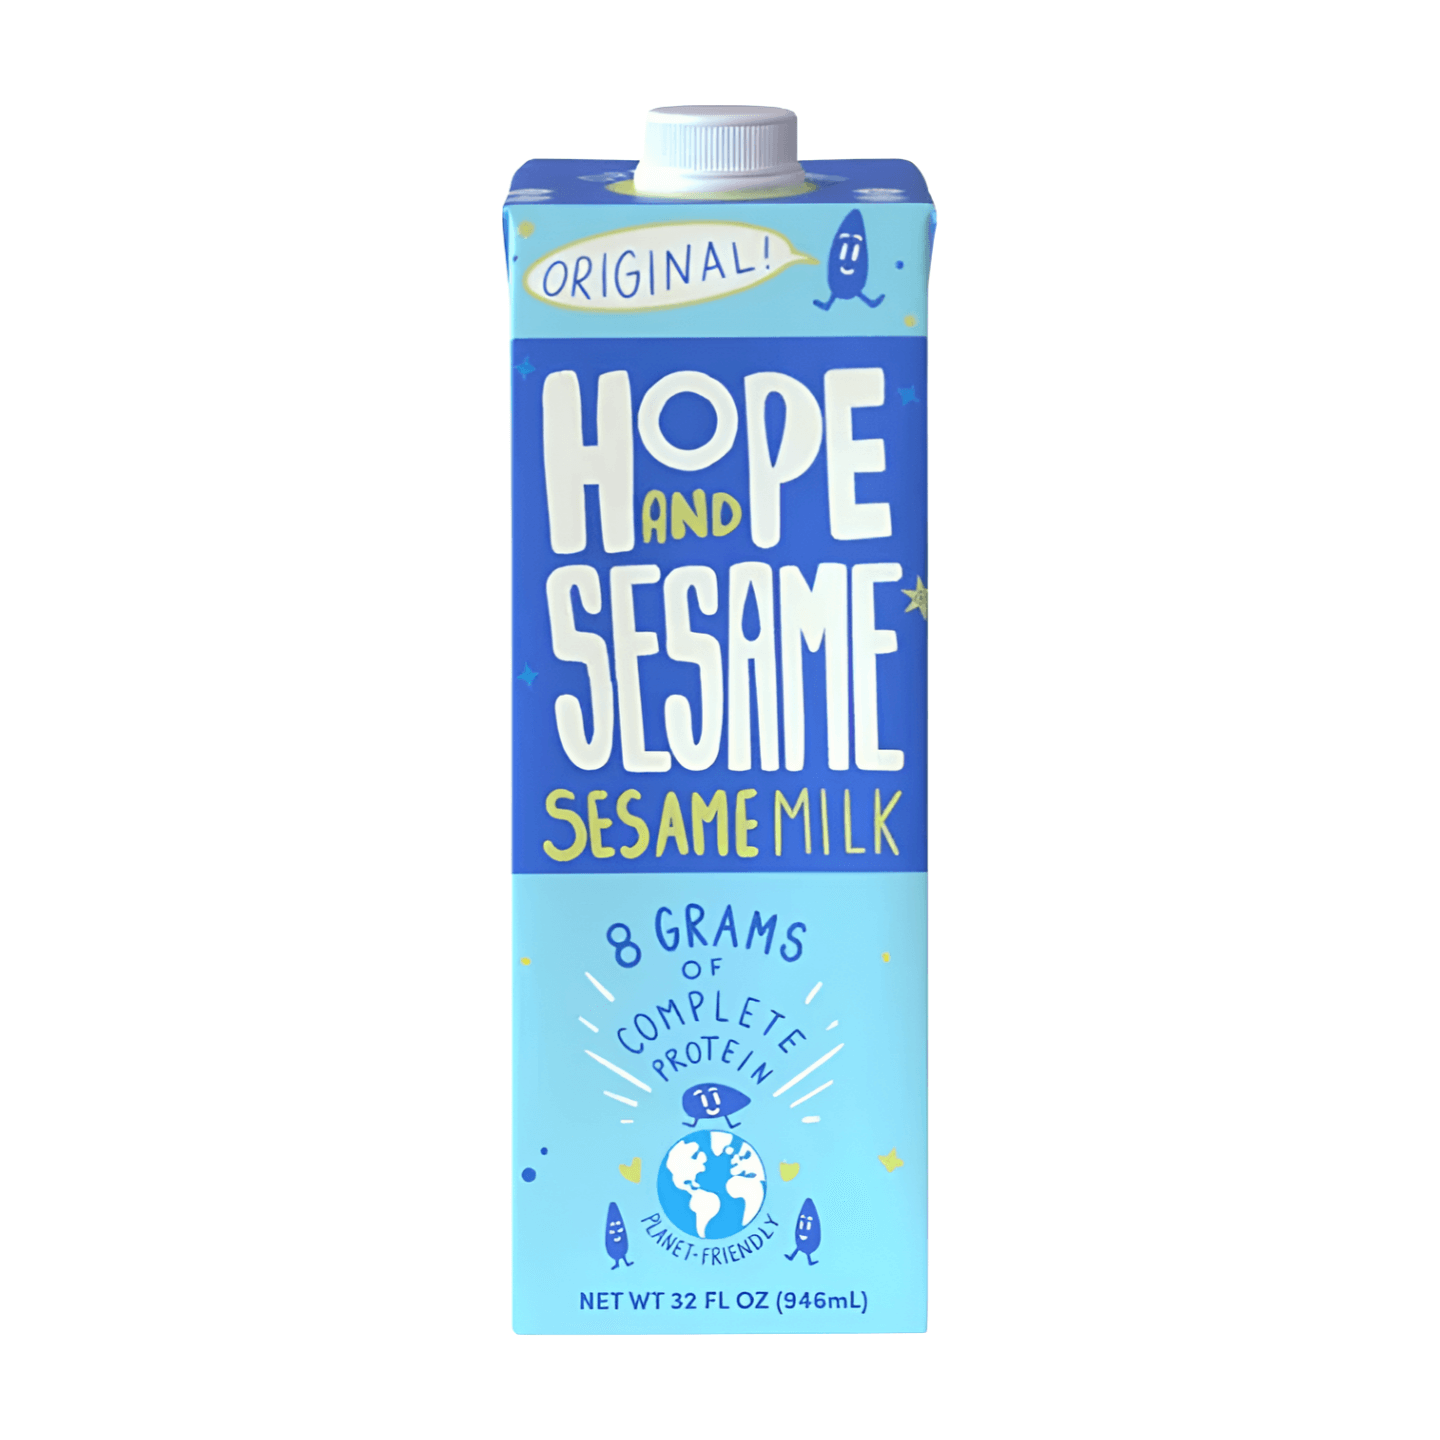 Hope And Sesame Original Sesamemilk